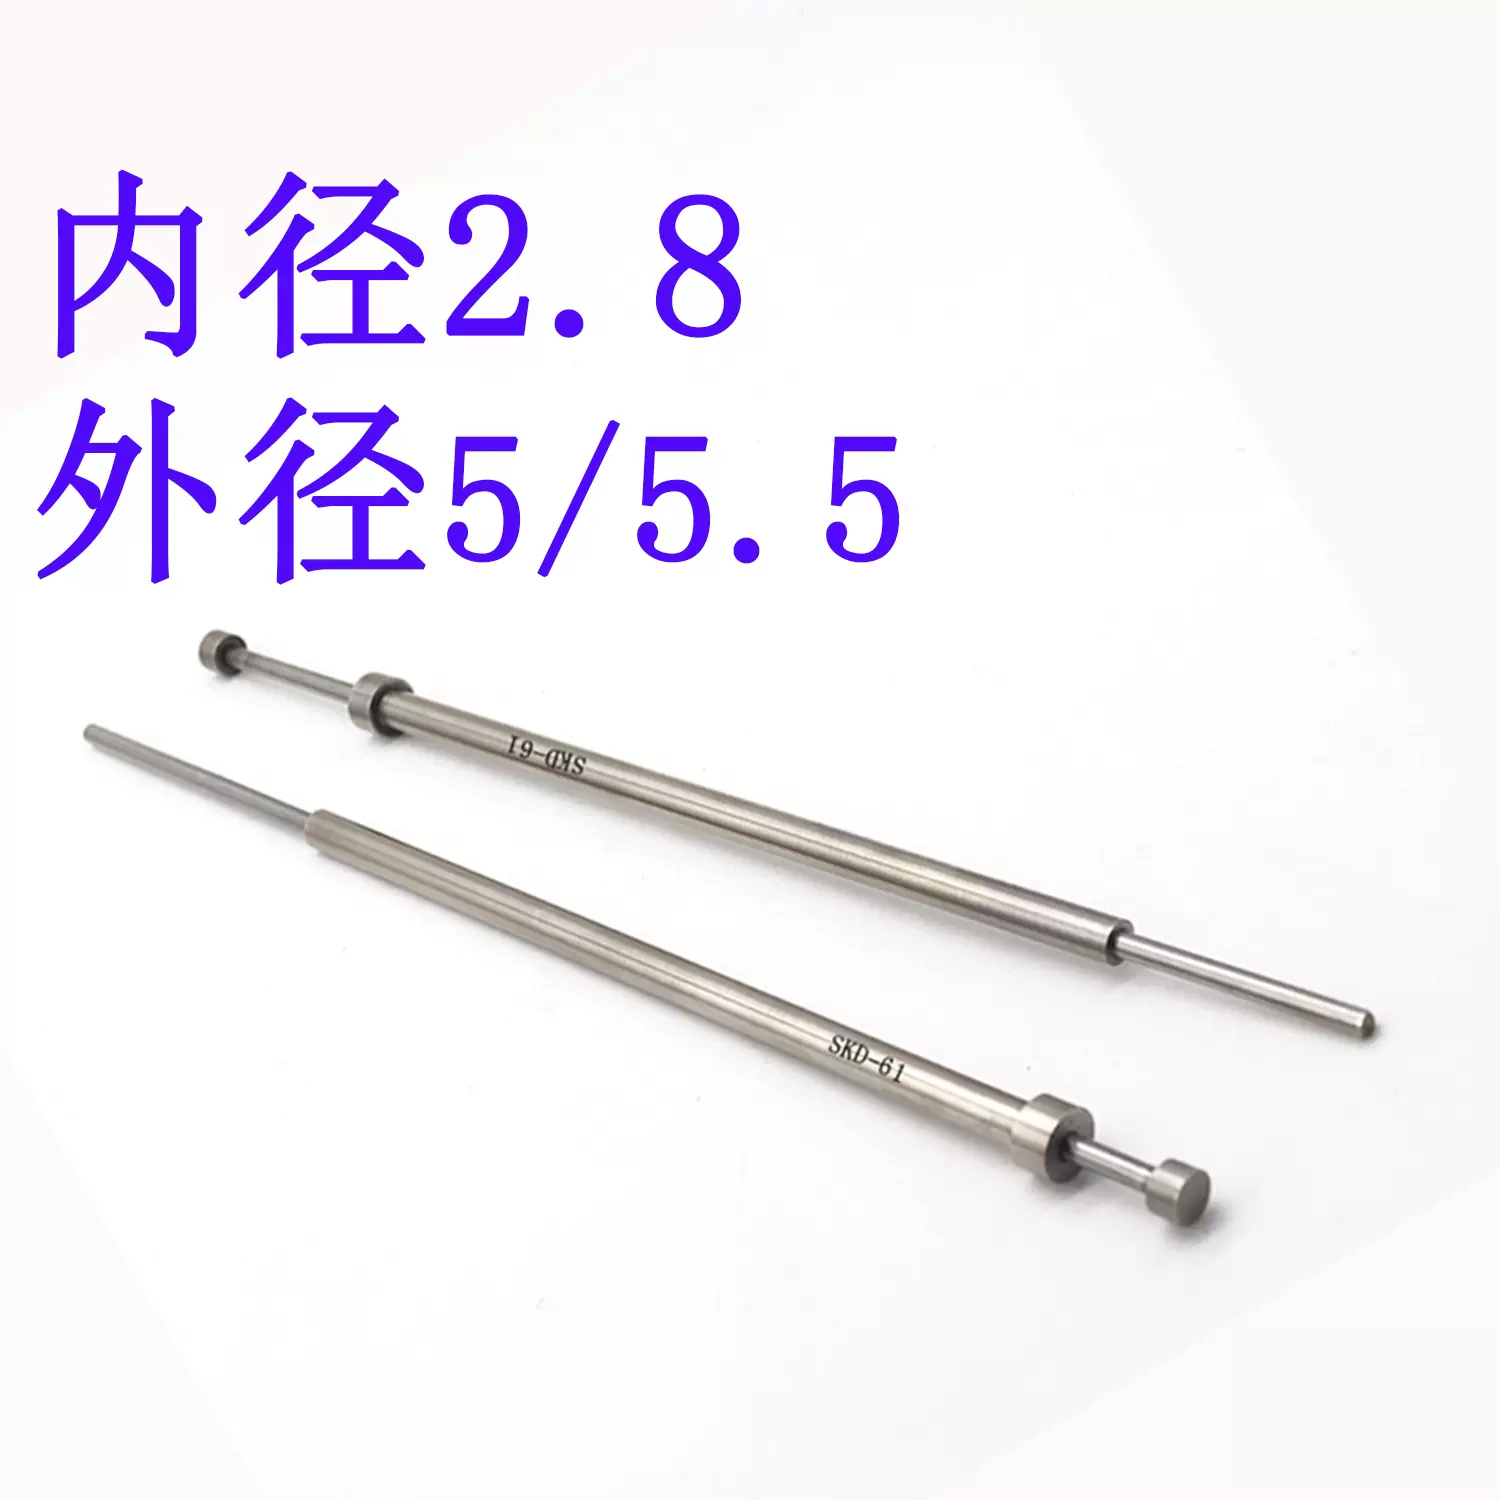 进口SKD 61模具司筒针FDAC推管空芯顶针顶管内径2.8外径5/5.5-Taobao